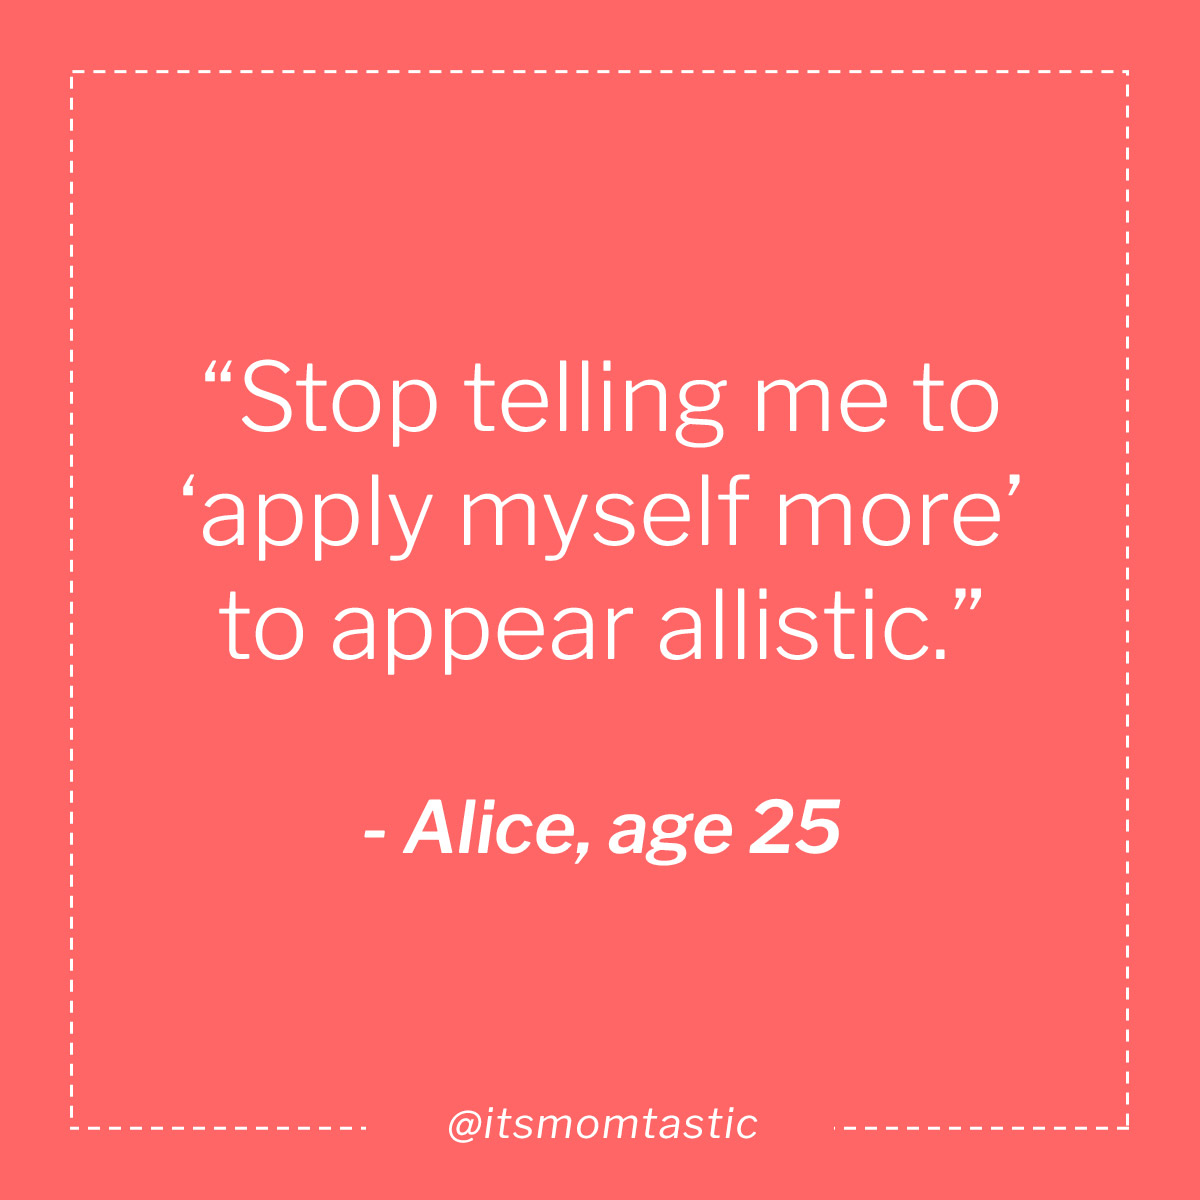 Alice, age 25